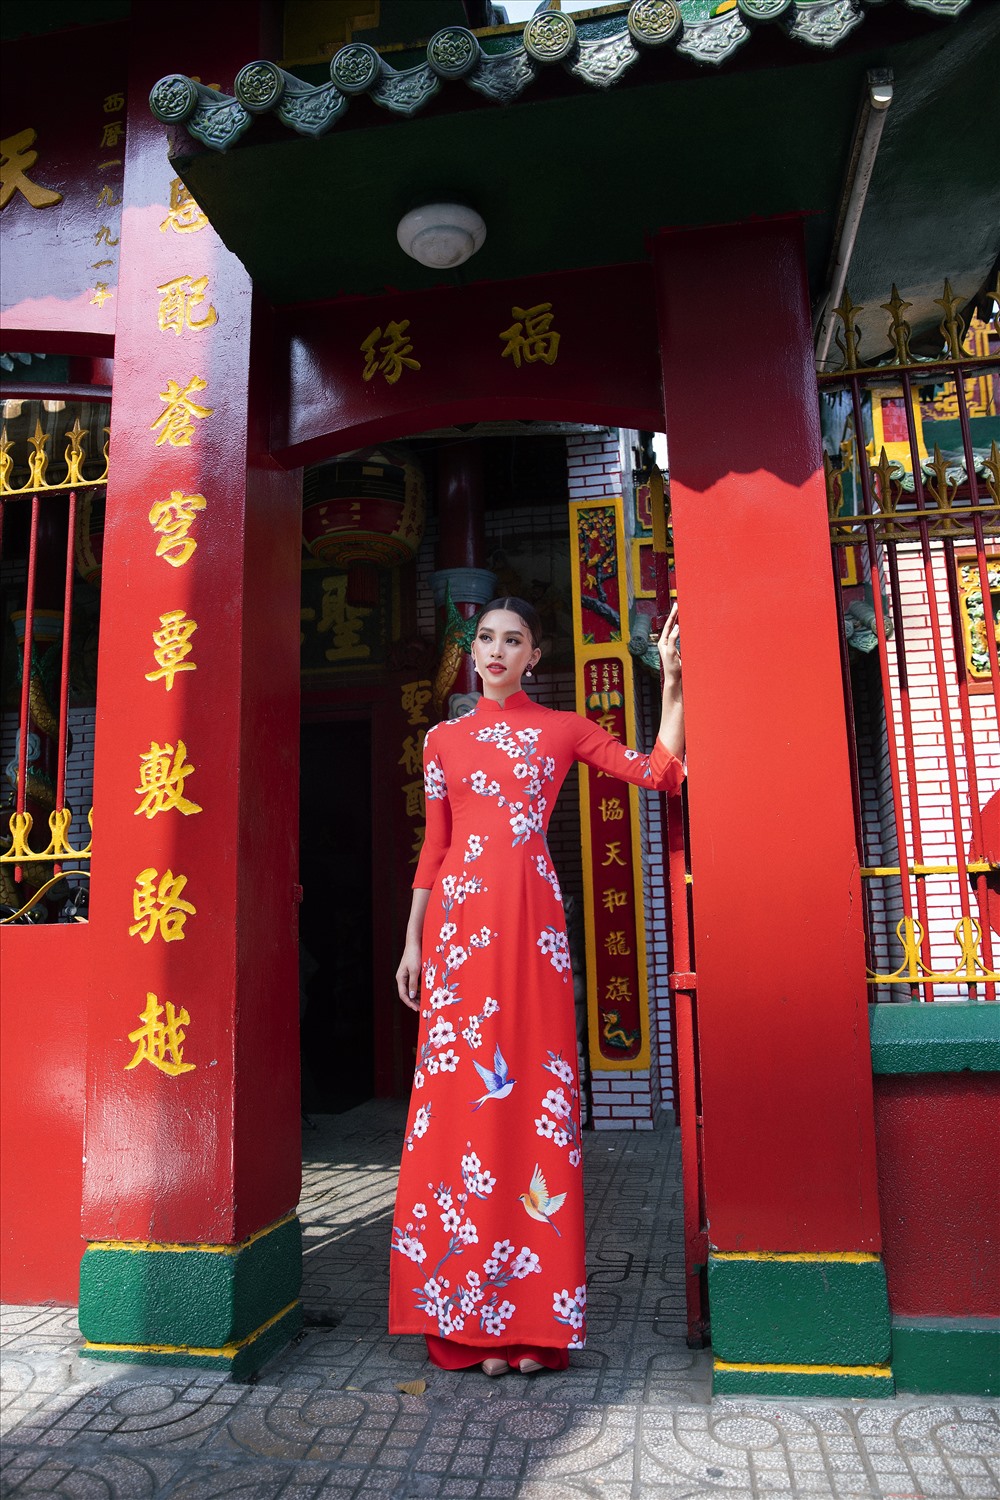 Là đại diện cho nhan sắc cả nước, Tiểu Vy khi khoác lên mình bộ trang phục truyền thống lại càng tôn lên vẻ đẹp của một người phụ nữ Việt Nam. Ảnh: Lê Thiện Viễn.